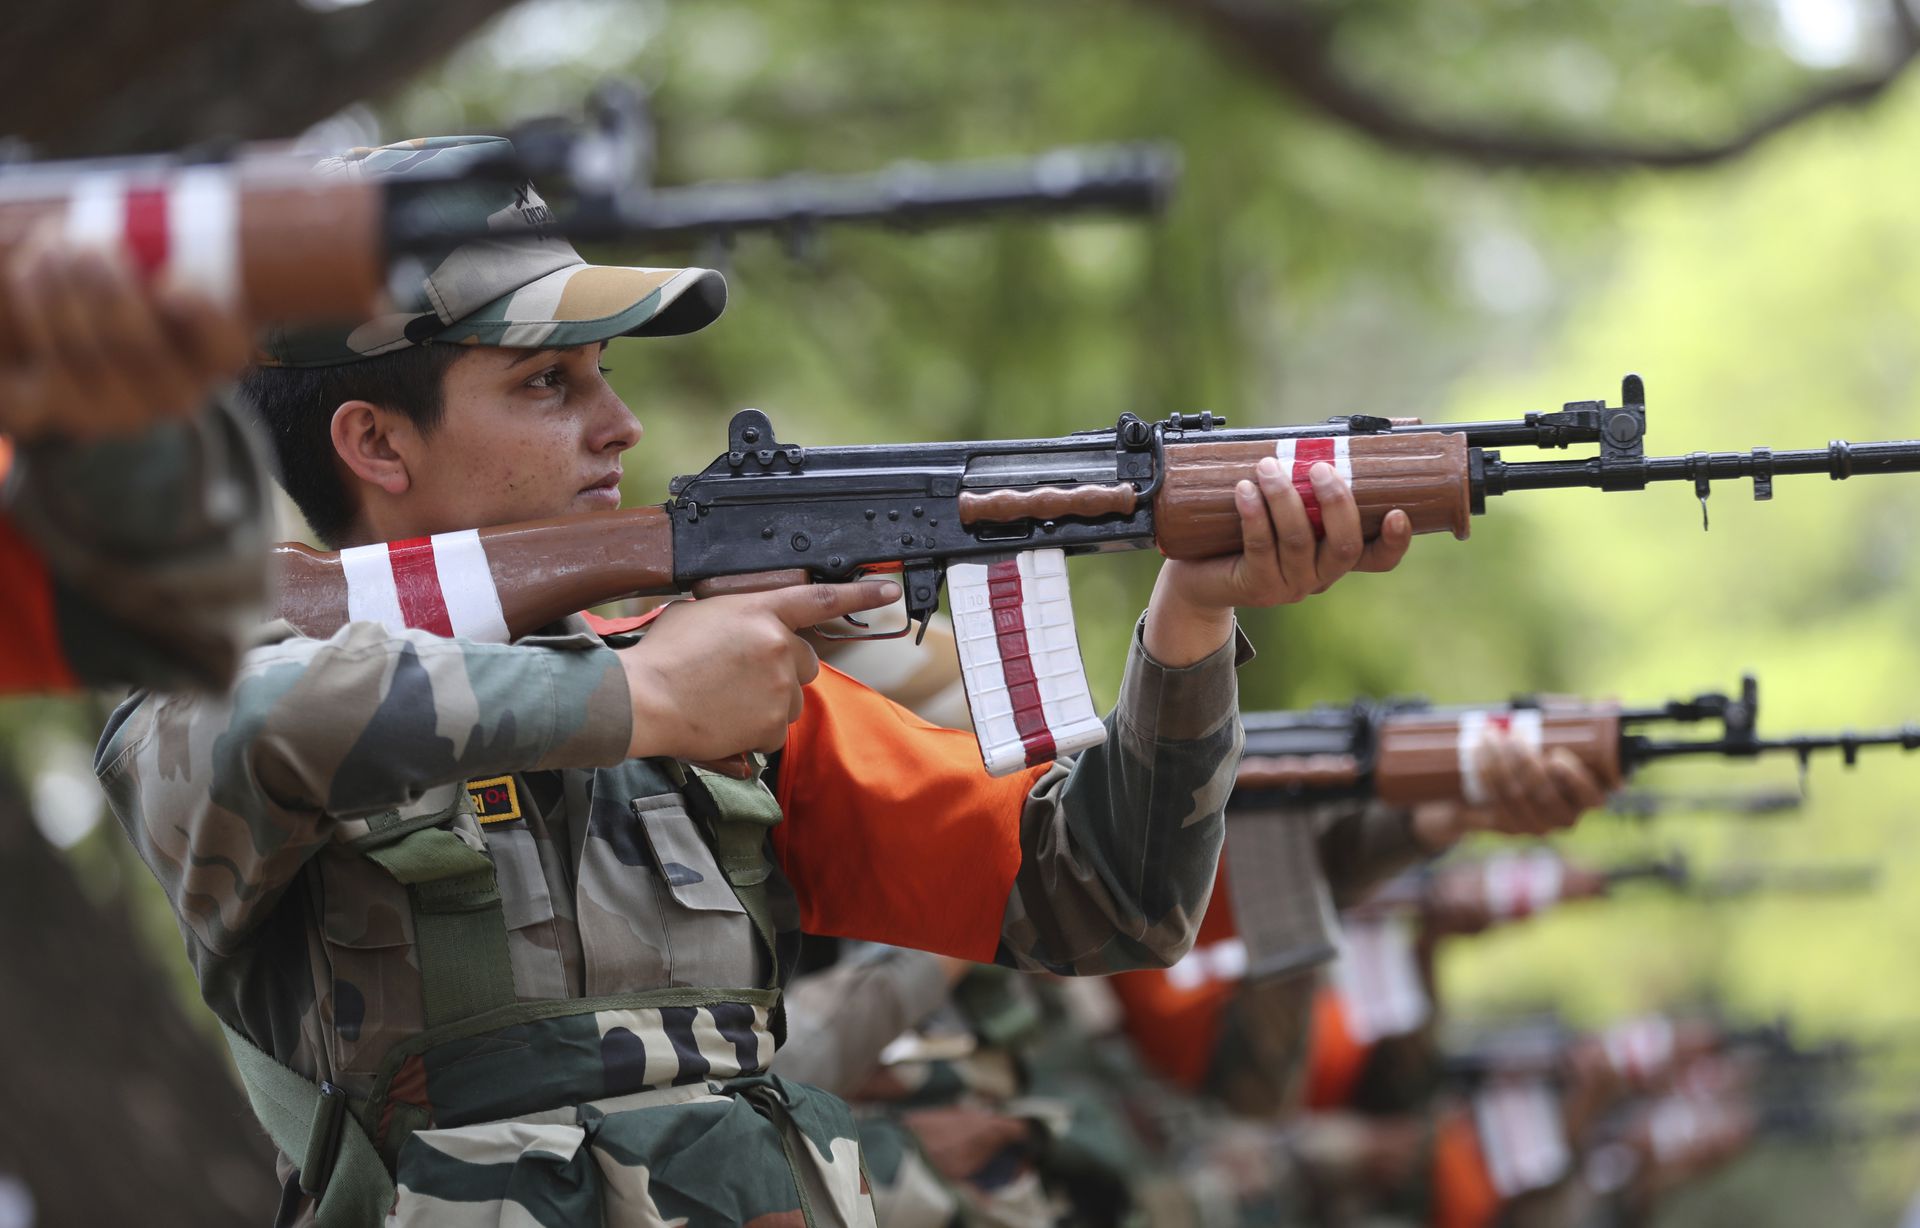 就目前局面来说，新德里当局暂时尚未出动陆军部队以应对毛派游击队的局面。但这也和印度各地存在相当的自治程度，不希望新德里介入其内政有关。（美联社）